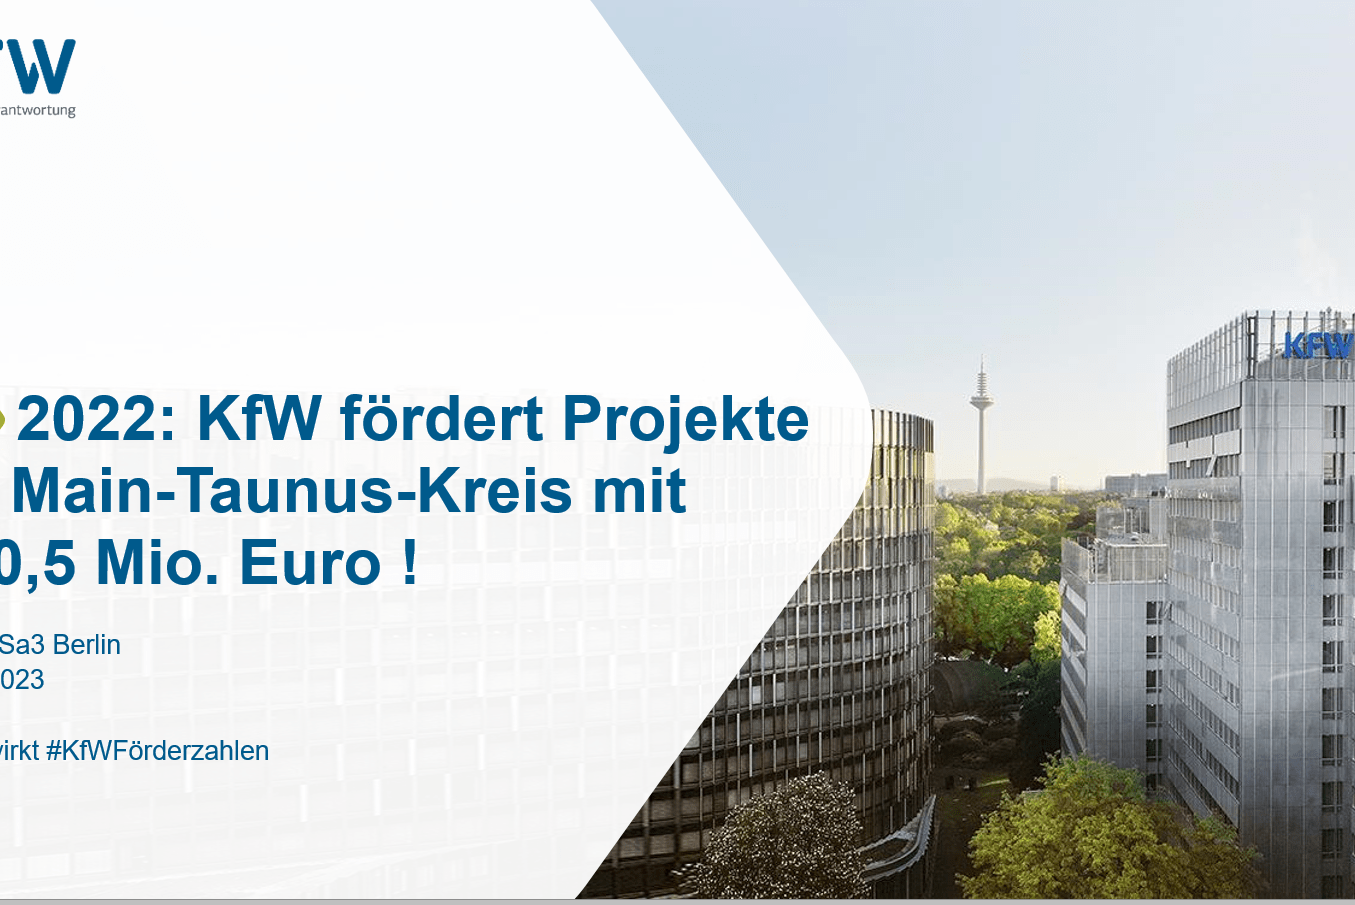 2022 gab’s über 160 Mio. Euro von der KfW für Unternehmen, Privatkunden und Kommunen im Main-Taunus-Kreis!